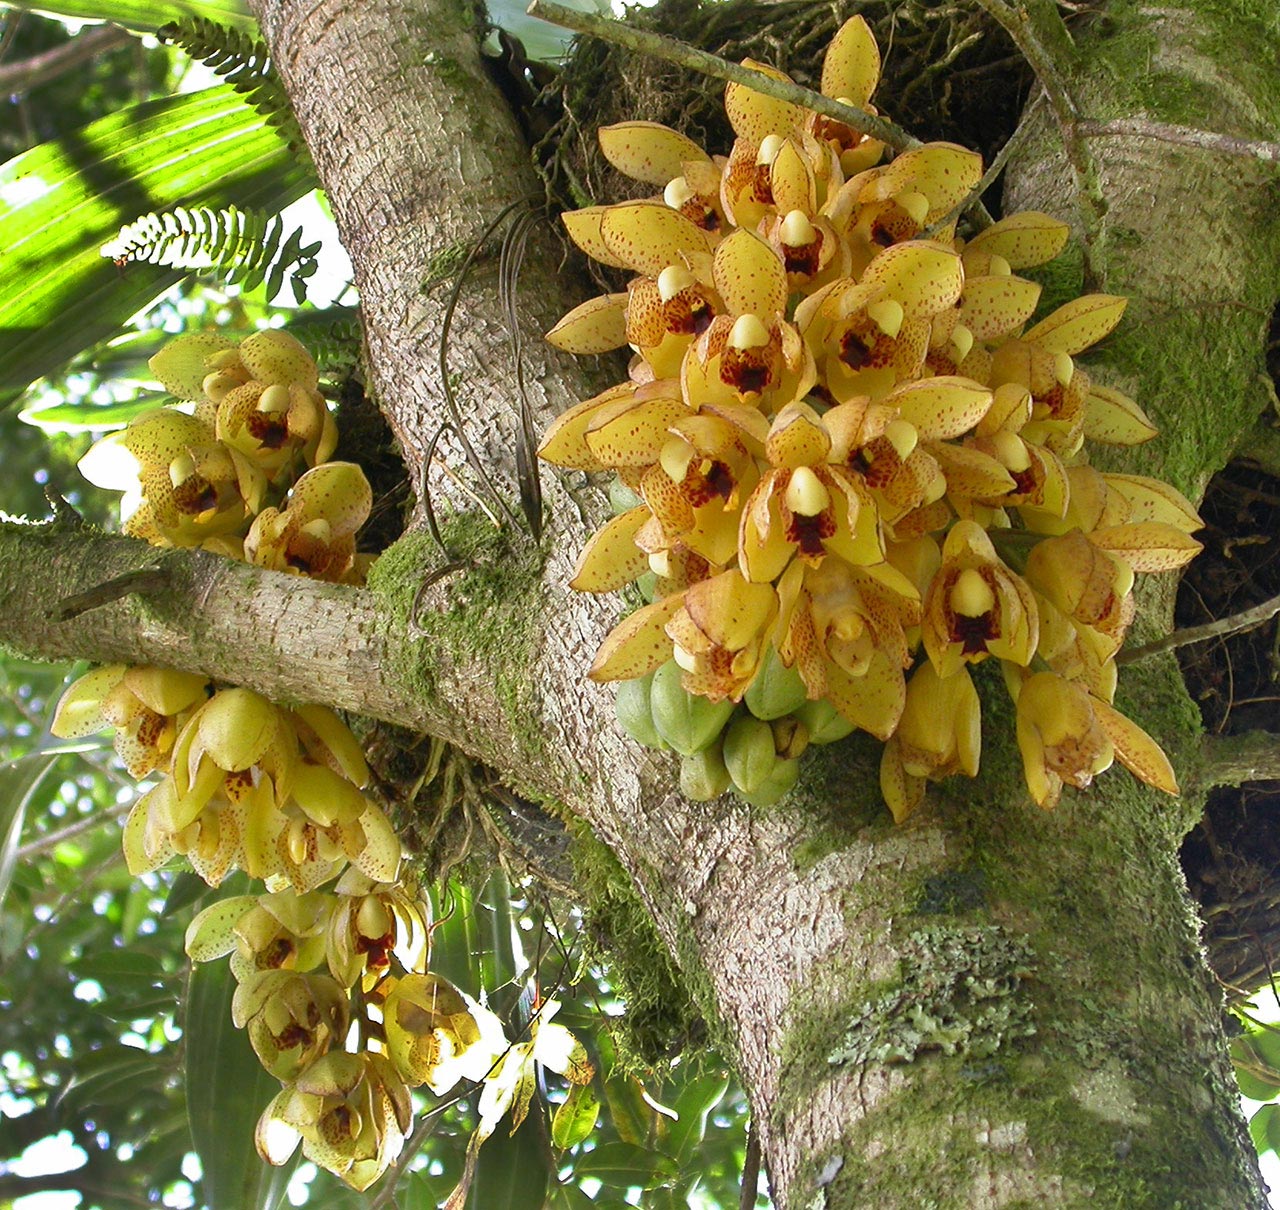 orquidea-acineta-bosque-de-paz-costa-rica – Título del sitio